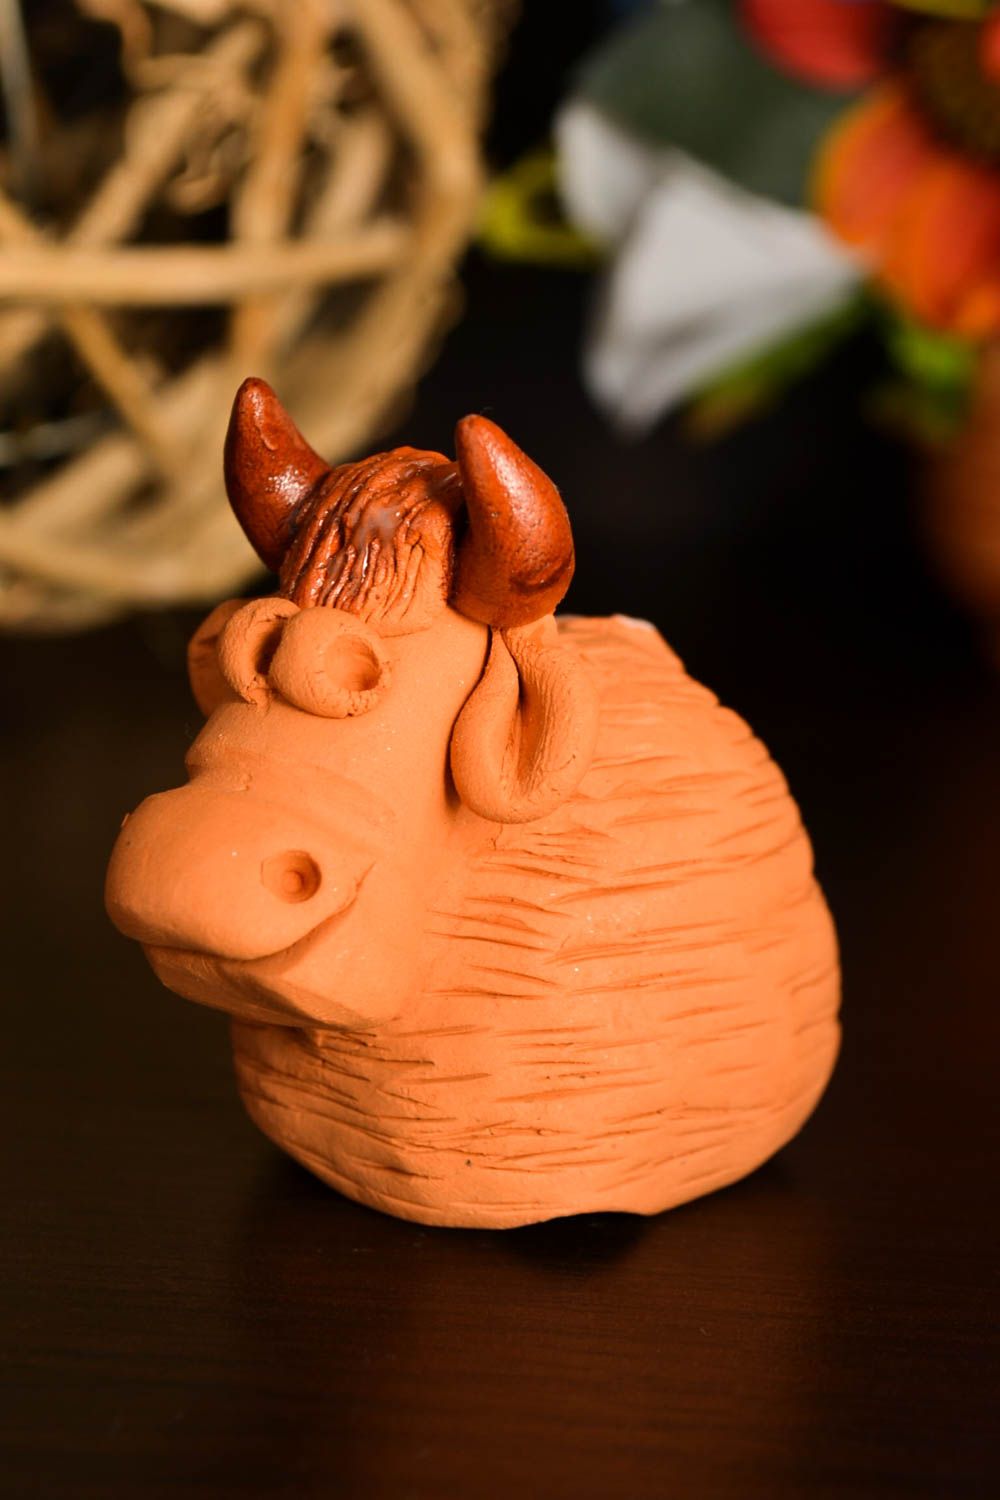 Figurina fatta a mano in ceramica carino animaletto souvenir in terracotta foto 1